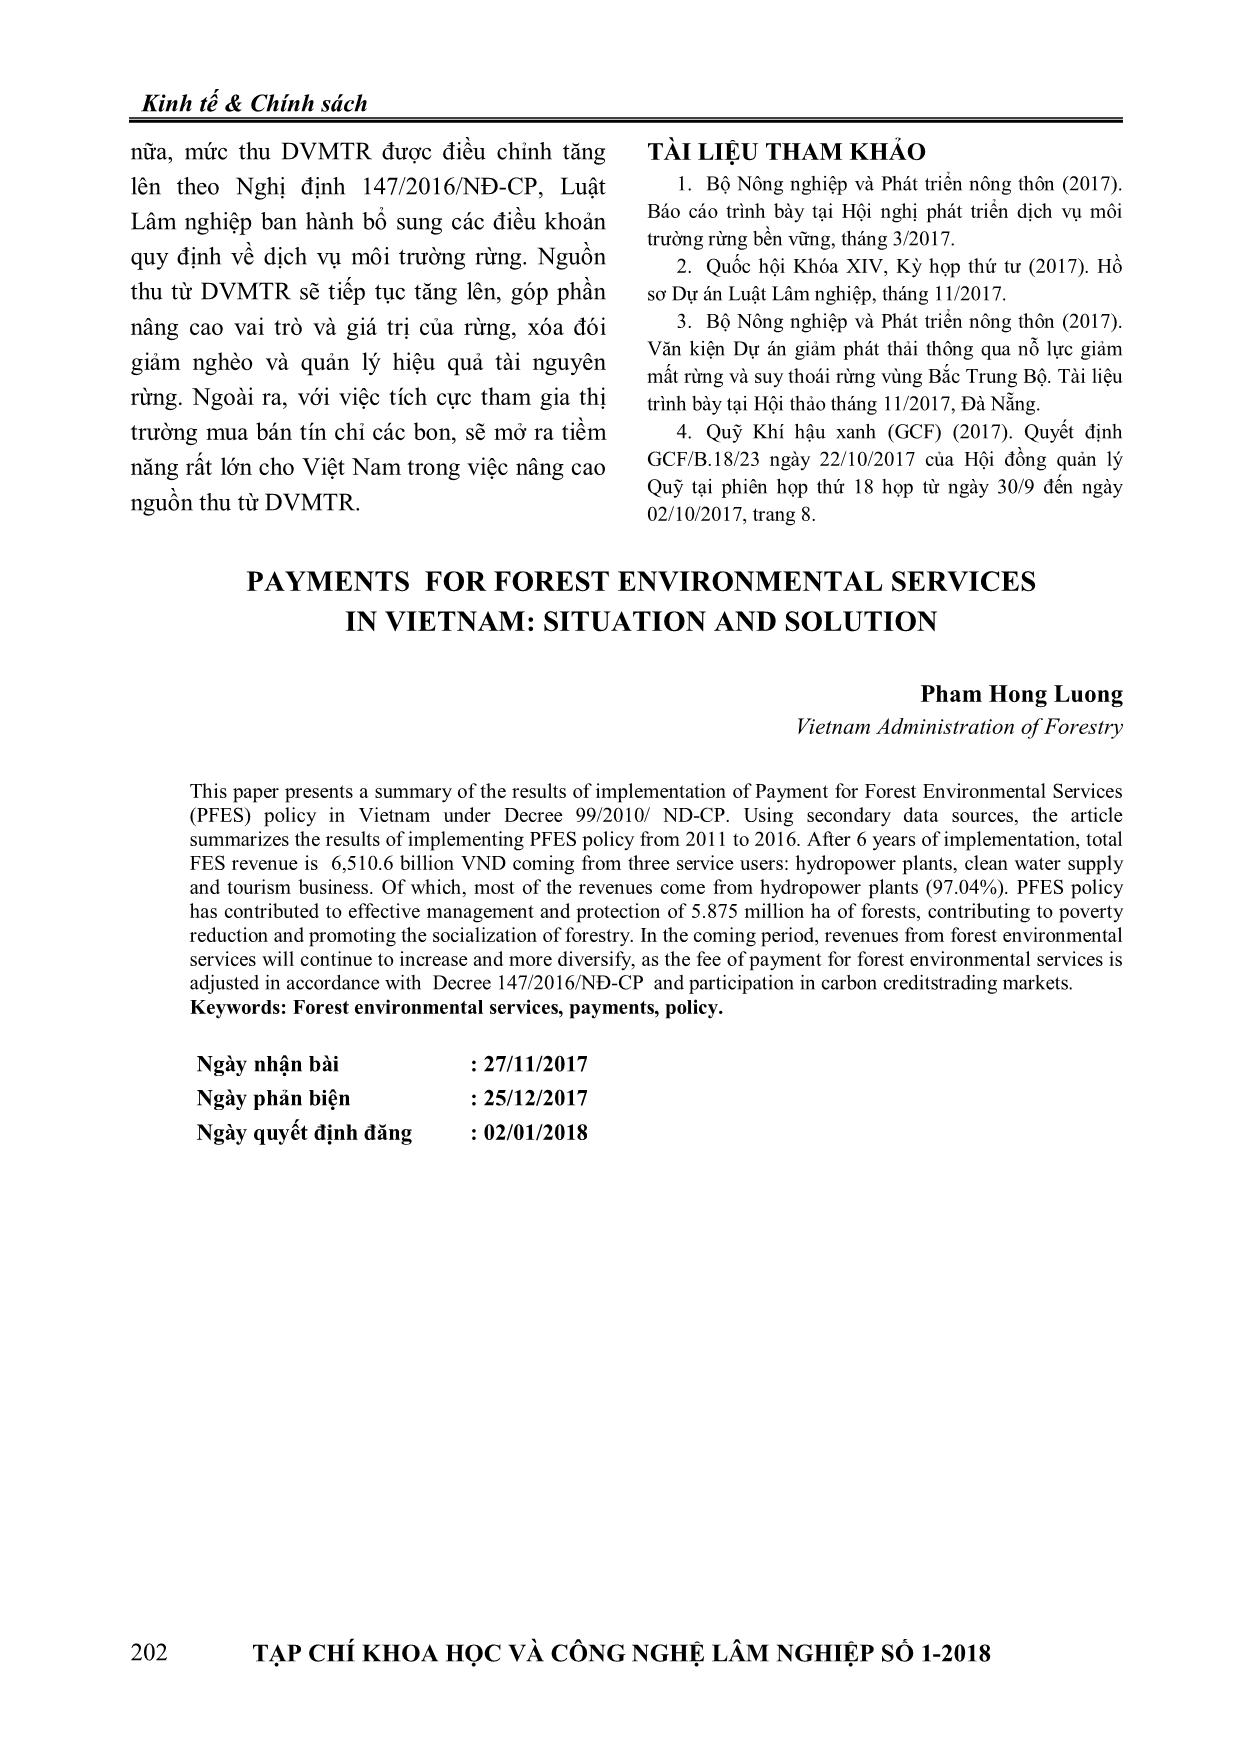 Chi trả dịch vụ môi trường rừng ở Việt Nam: Thực trạng và giải pháp trang 5